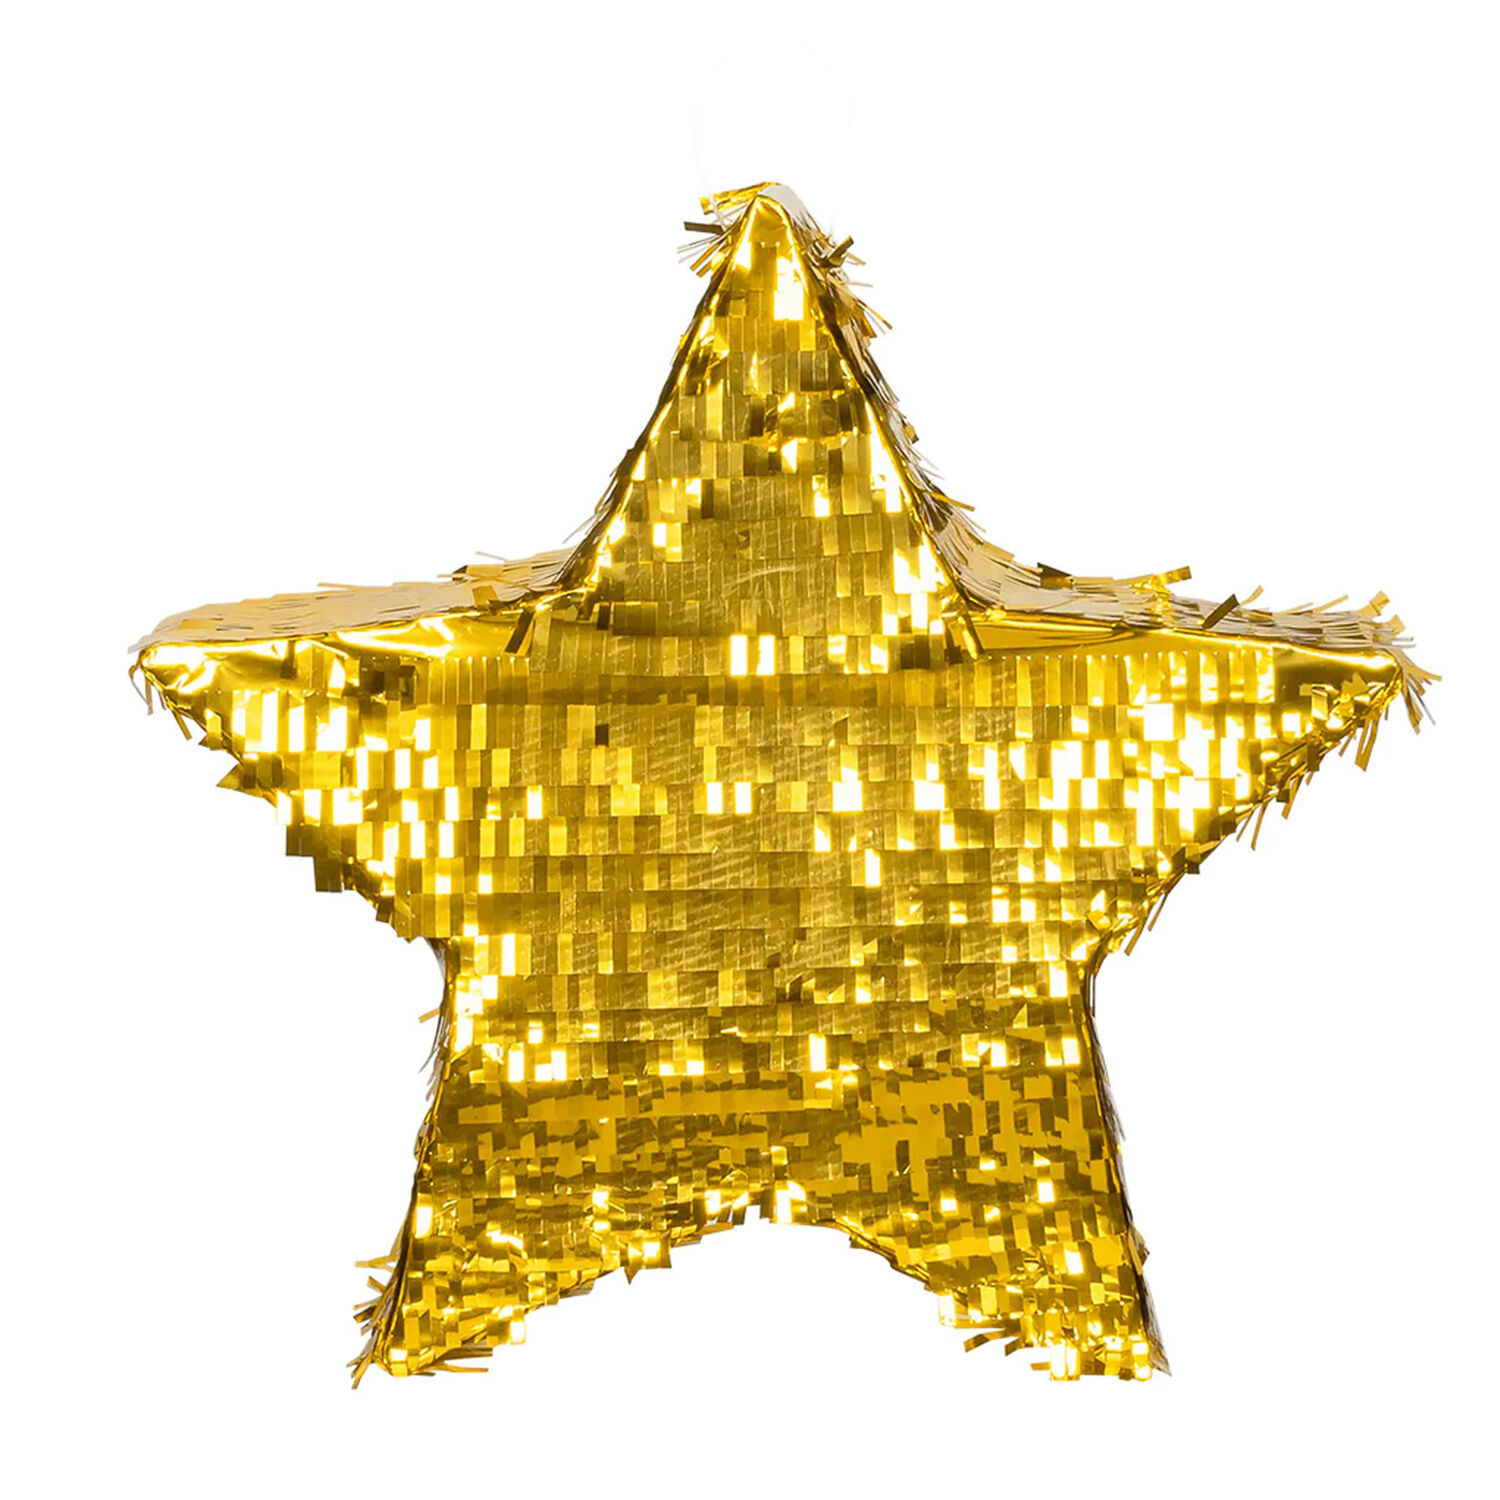 NEU Pinata Stern, mit Flitterfolie bedeckt, gold, 44x44cm